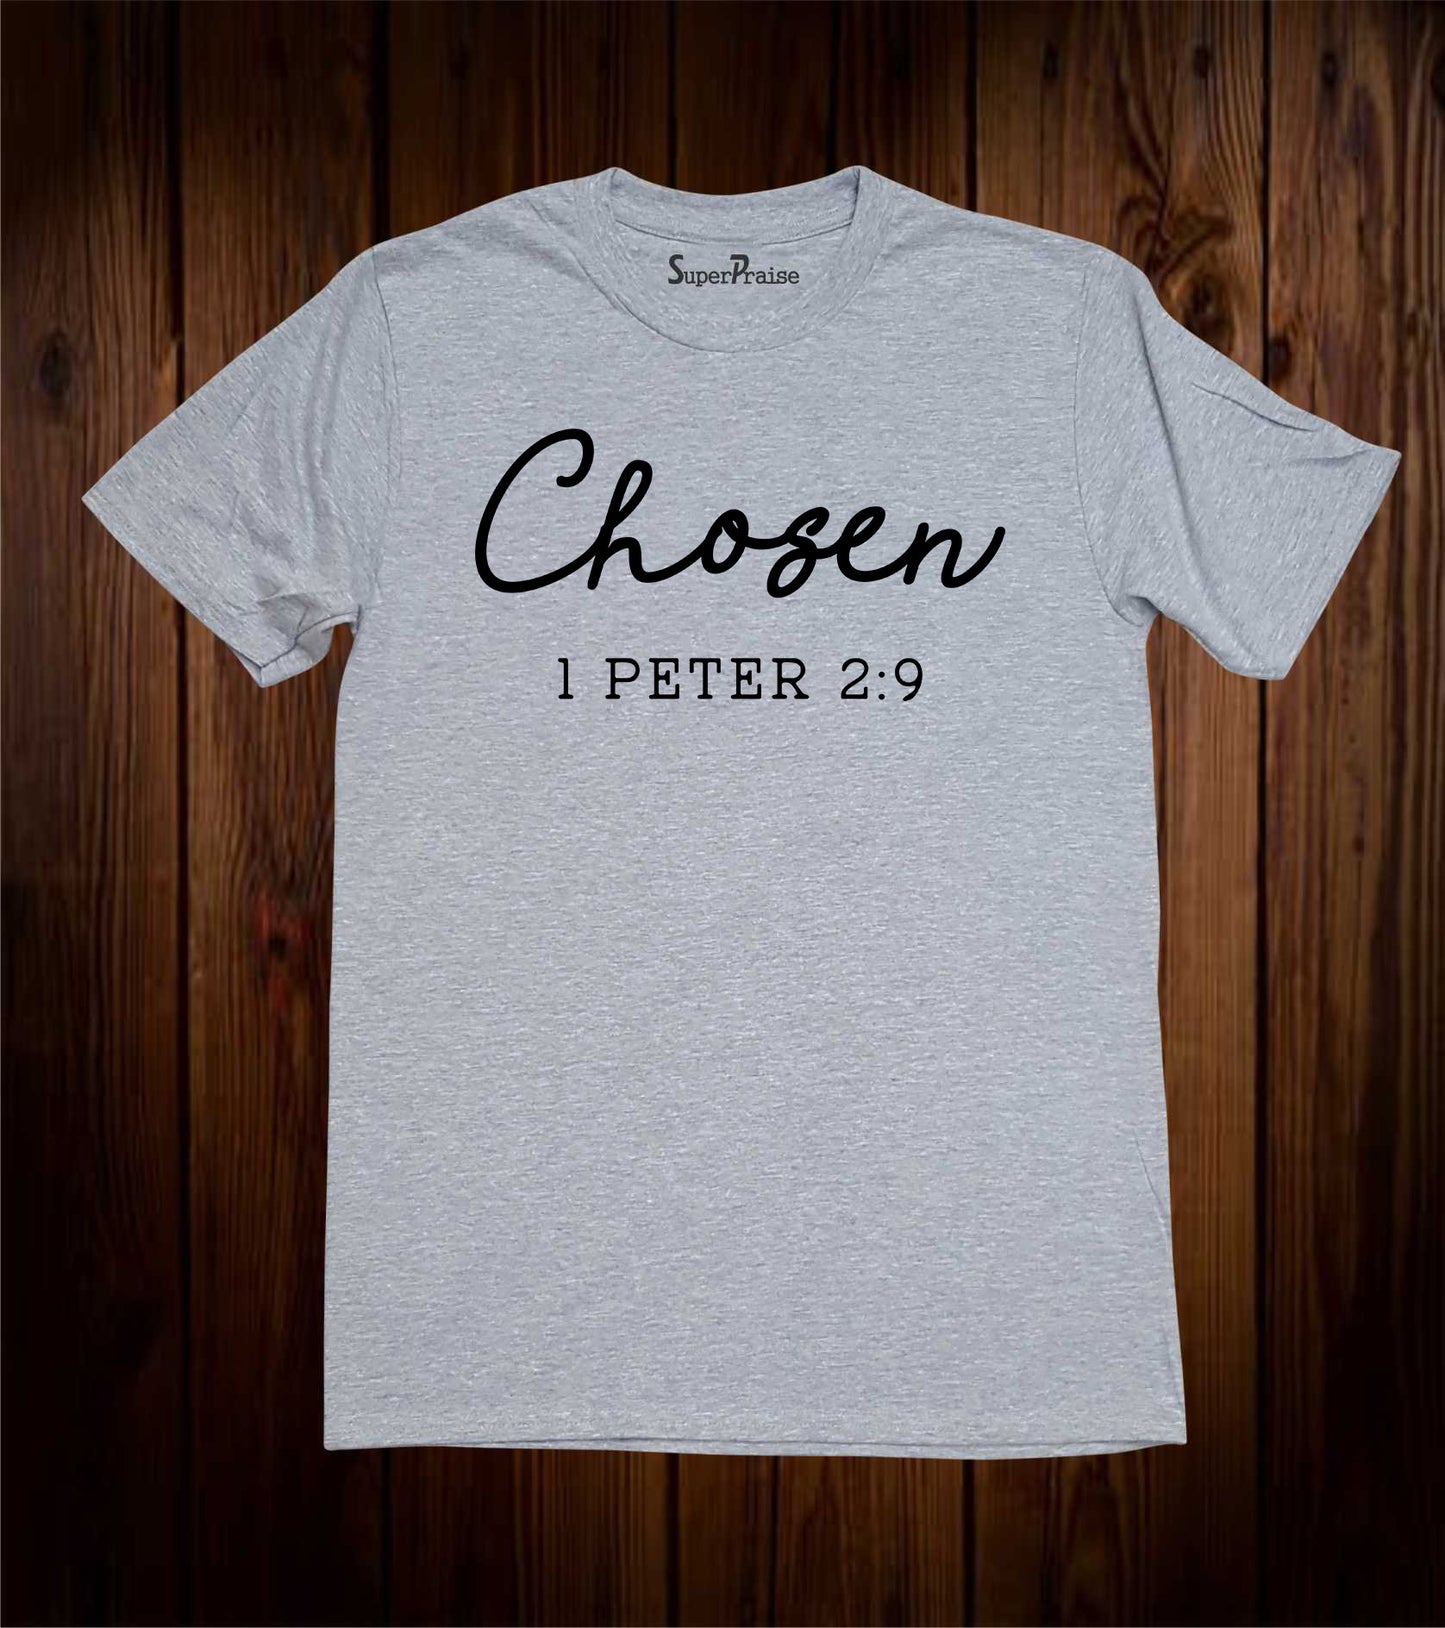 Chosen 1 Peter 2:9 Christian Apparel You Are Chosen Bible Verse T Shirt